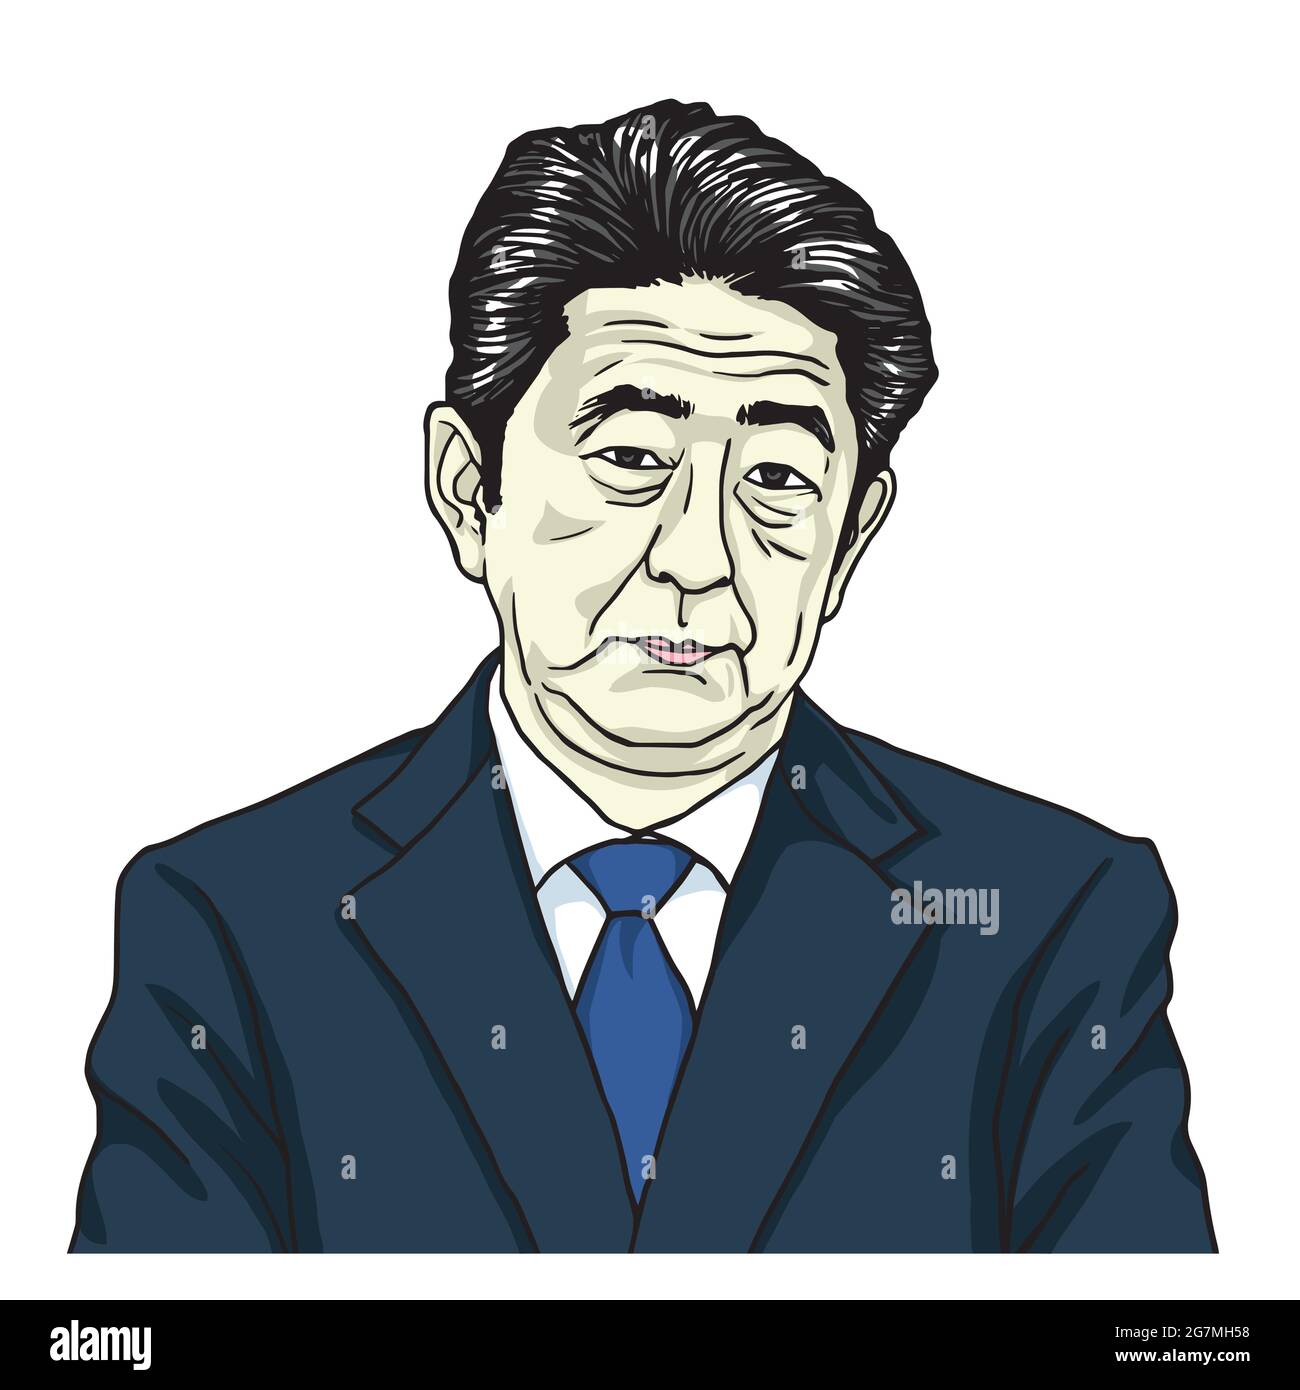 Shinzo Abe, Premier ministre du Japon. Caricature de dessin animé Illustration vectorielle dessin portrait Illustration de Vecteur